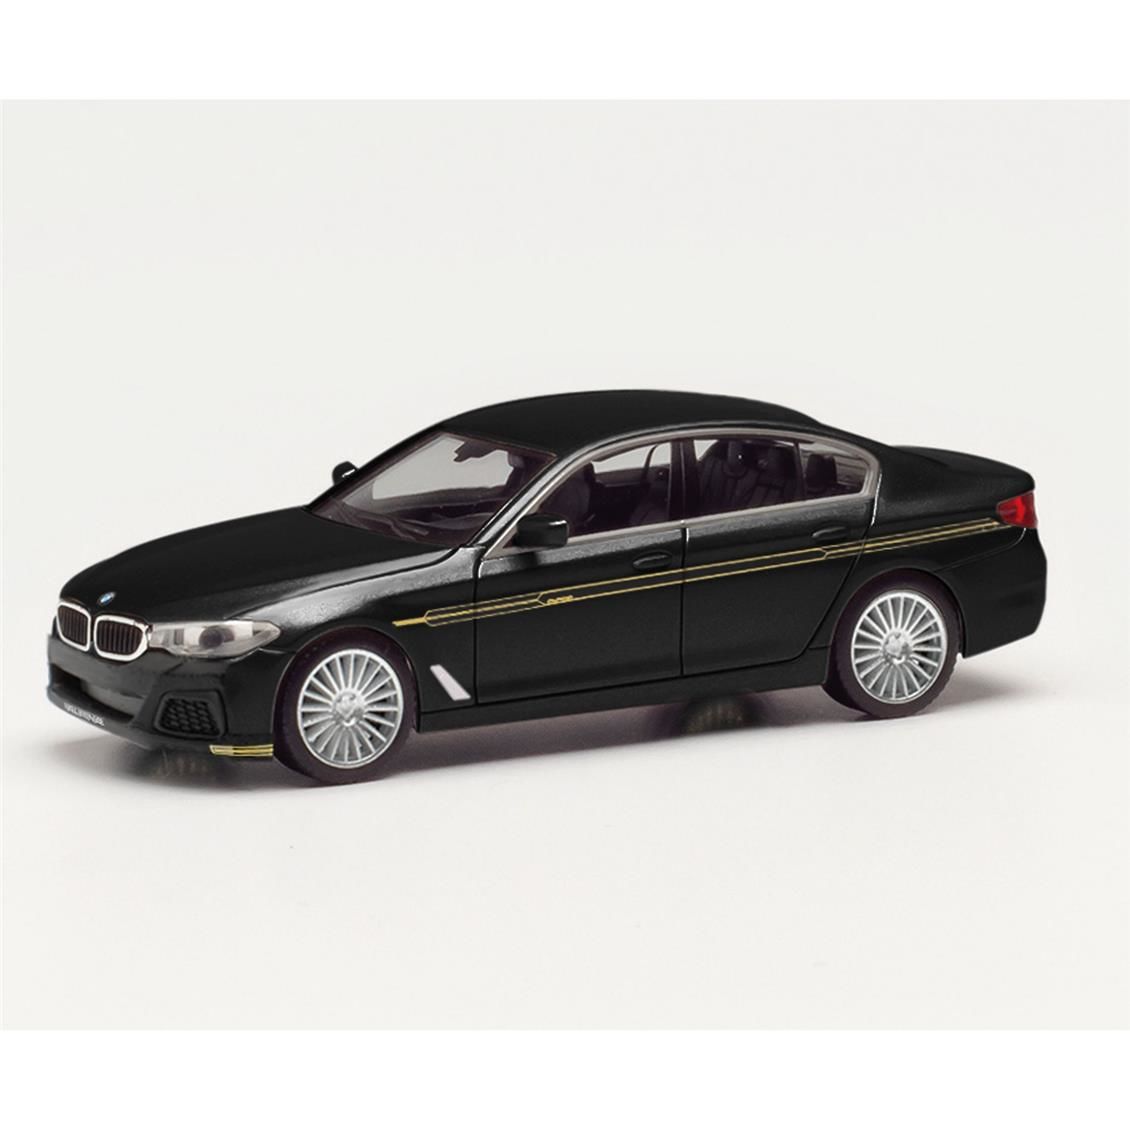 Herpa 430951 1/87 Ölçek BMW Alpina B5, Siyah Metalik, Sergilemeye Hazır Model Araç